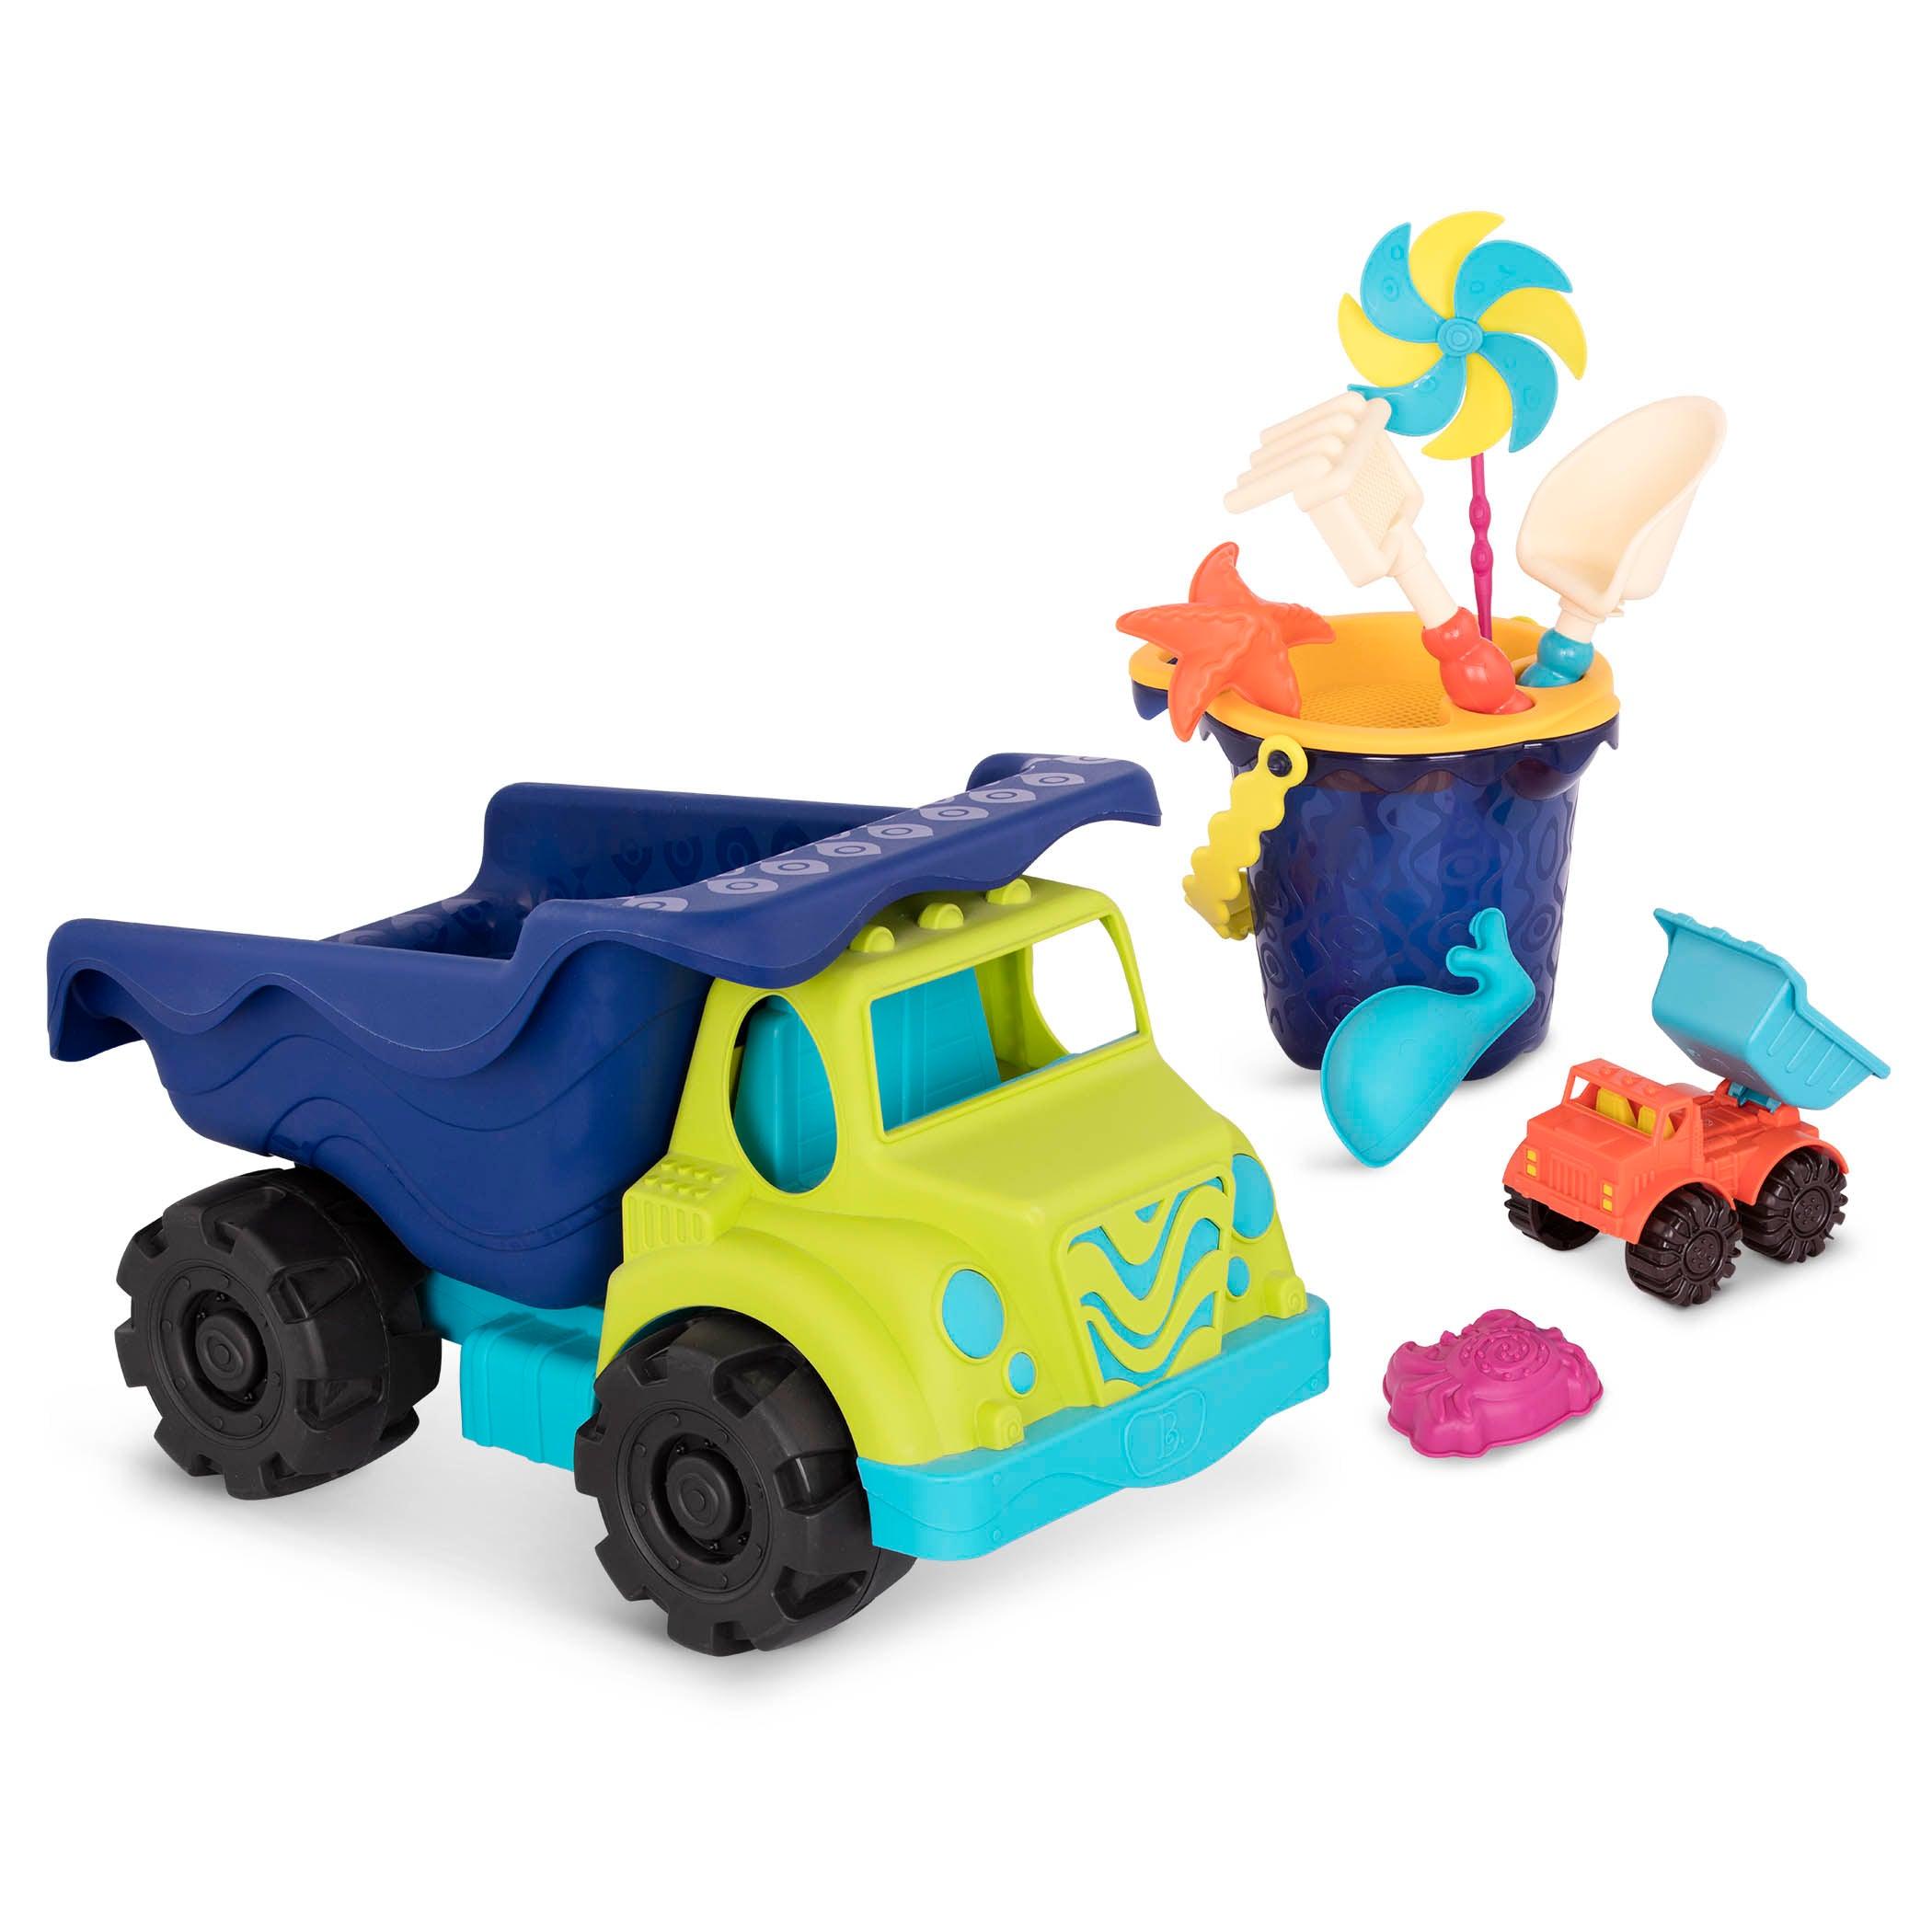 B.Toys: Giant Dump Truck + Bucket com acessórios de areia Cruiser colossal e areia AHOY